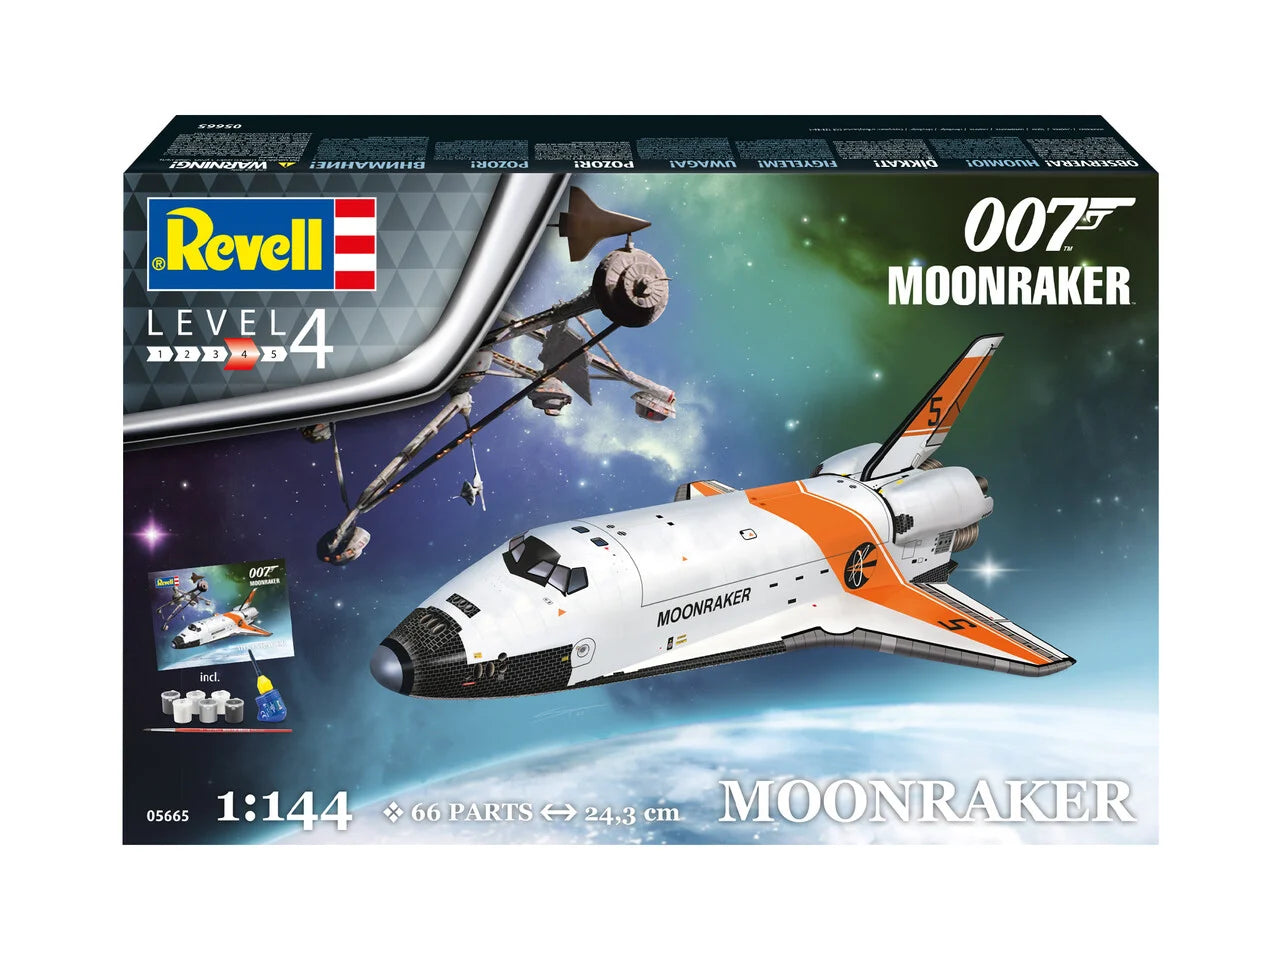 Moonraker Space Shuttle 1:144 Scale Kit